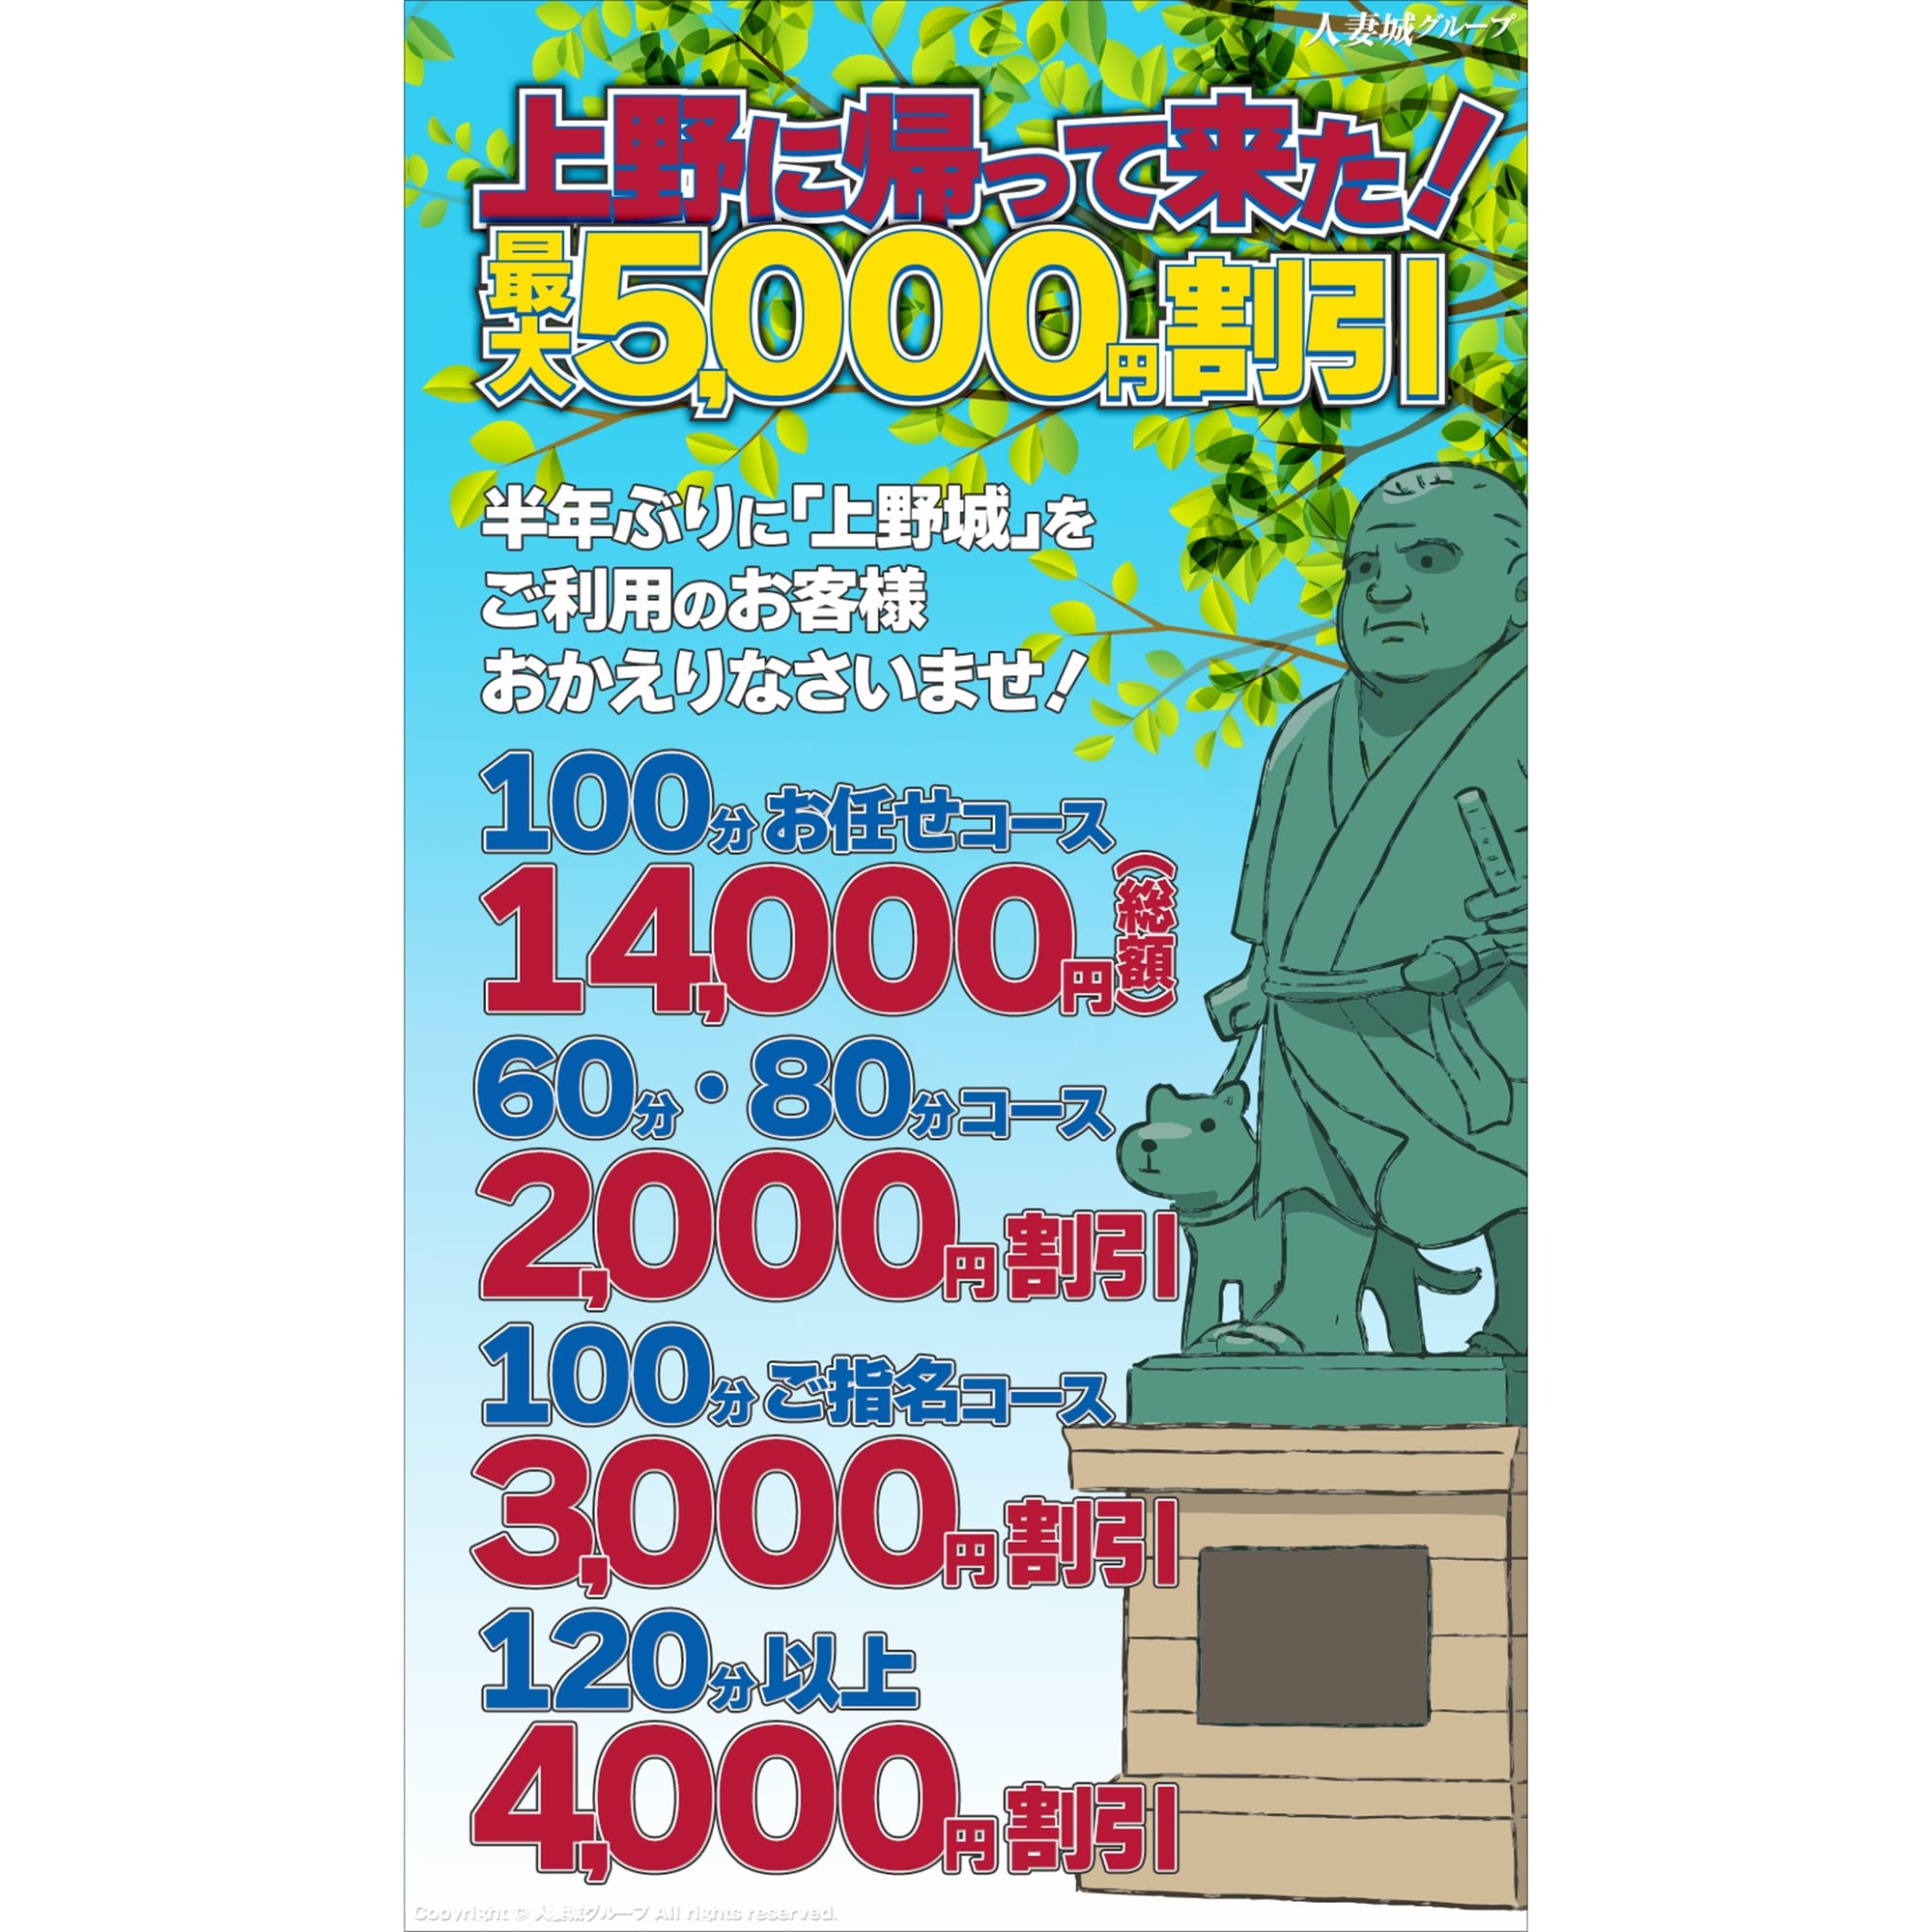 「上野に帰って来た!」04/25(木) 19:59 | 上野人妻城のお得なニュース